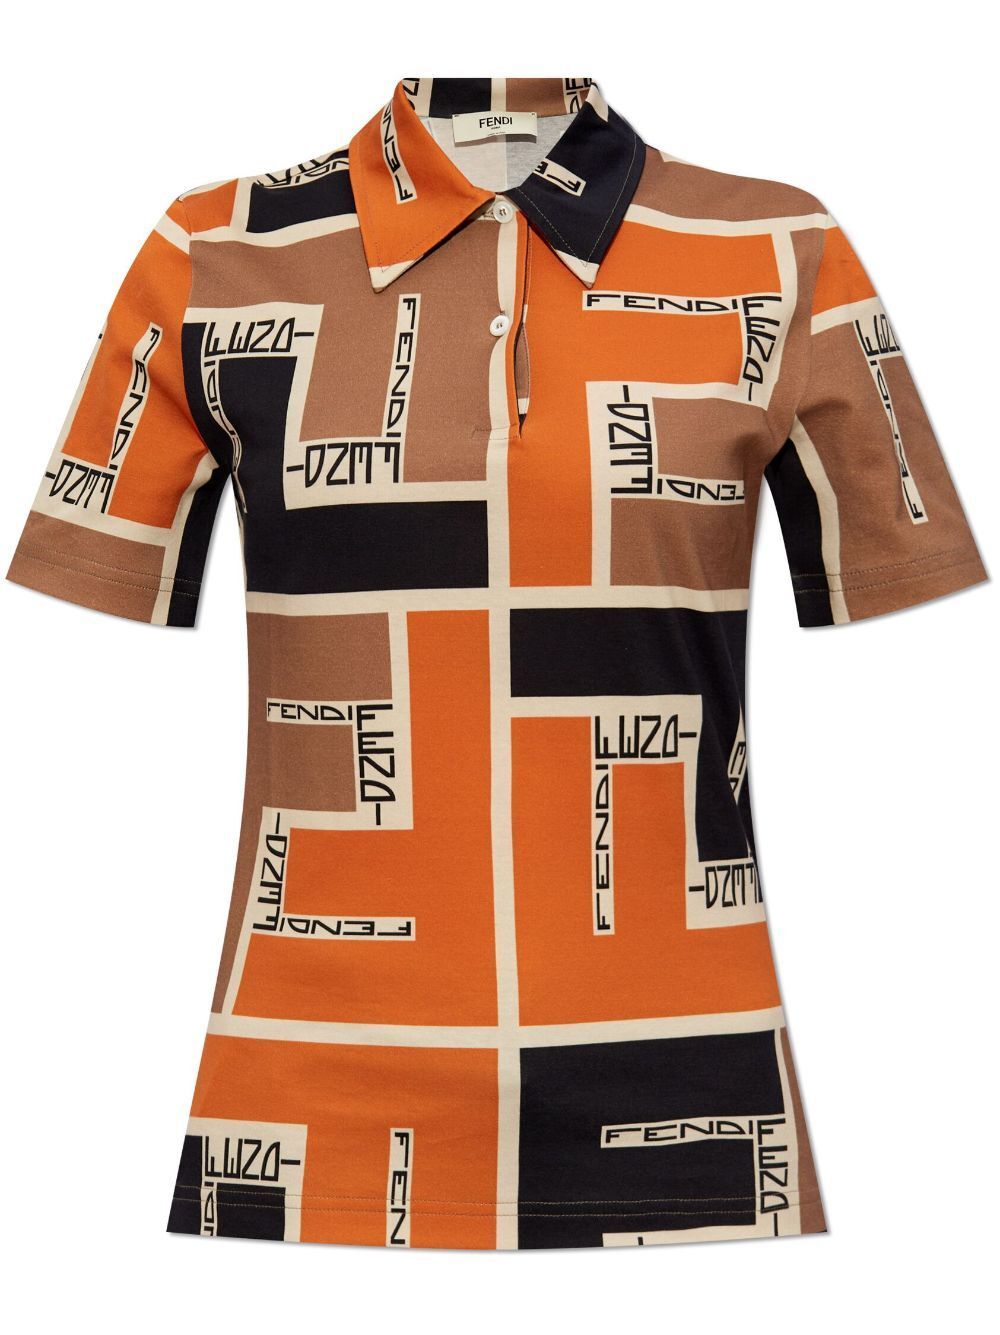 Fendi Maxi Puzzle Print Polo Shirt In Yellow & Orange For Women